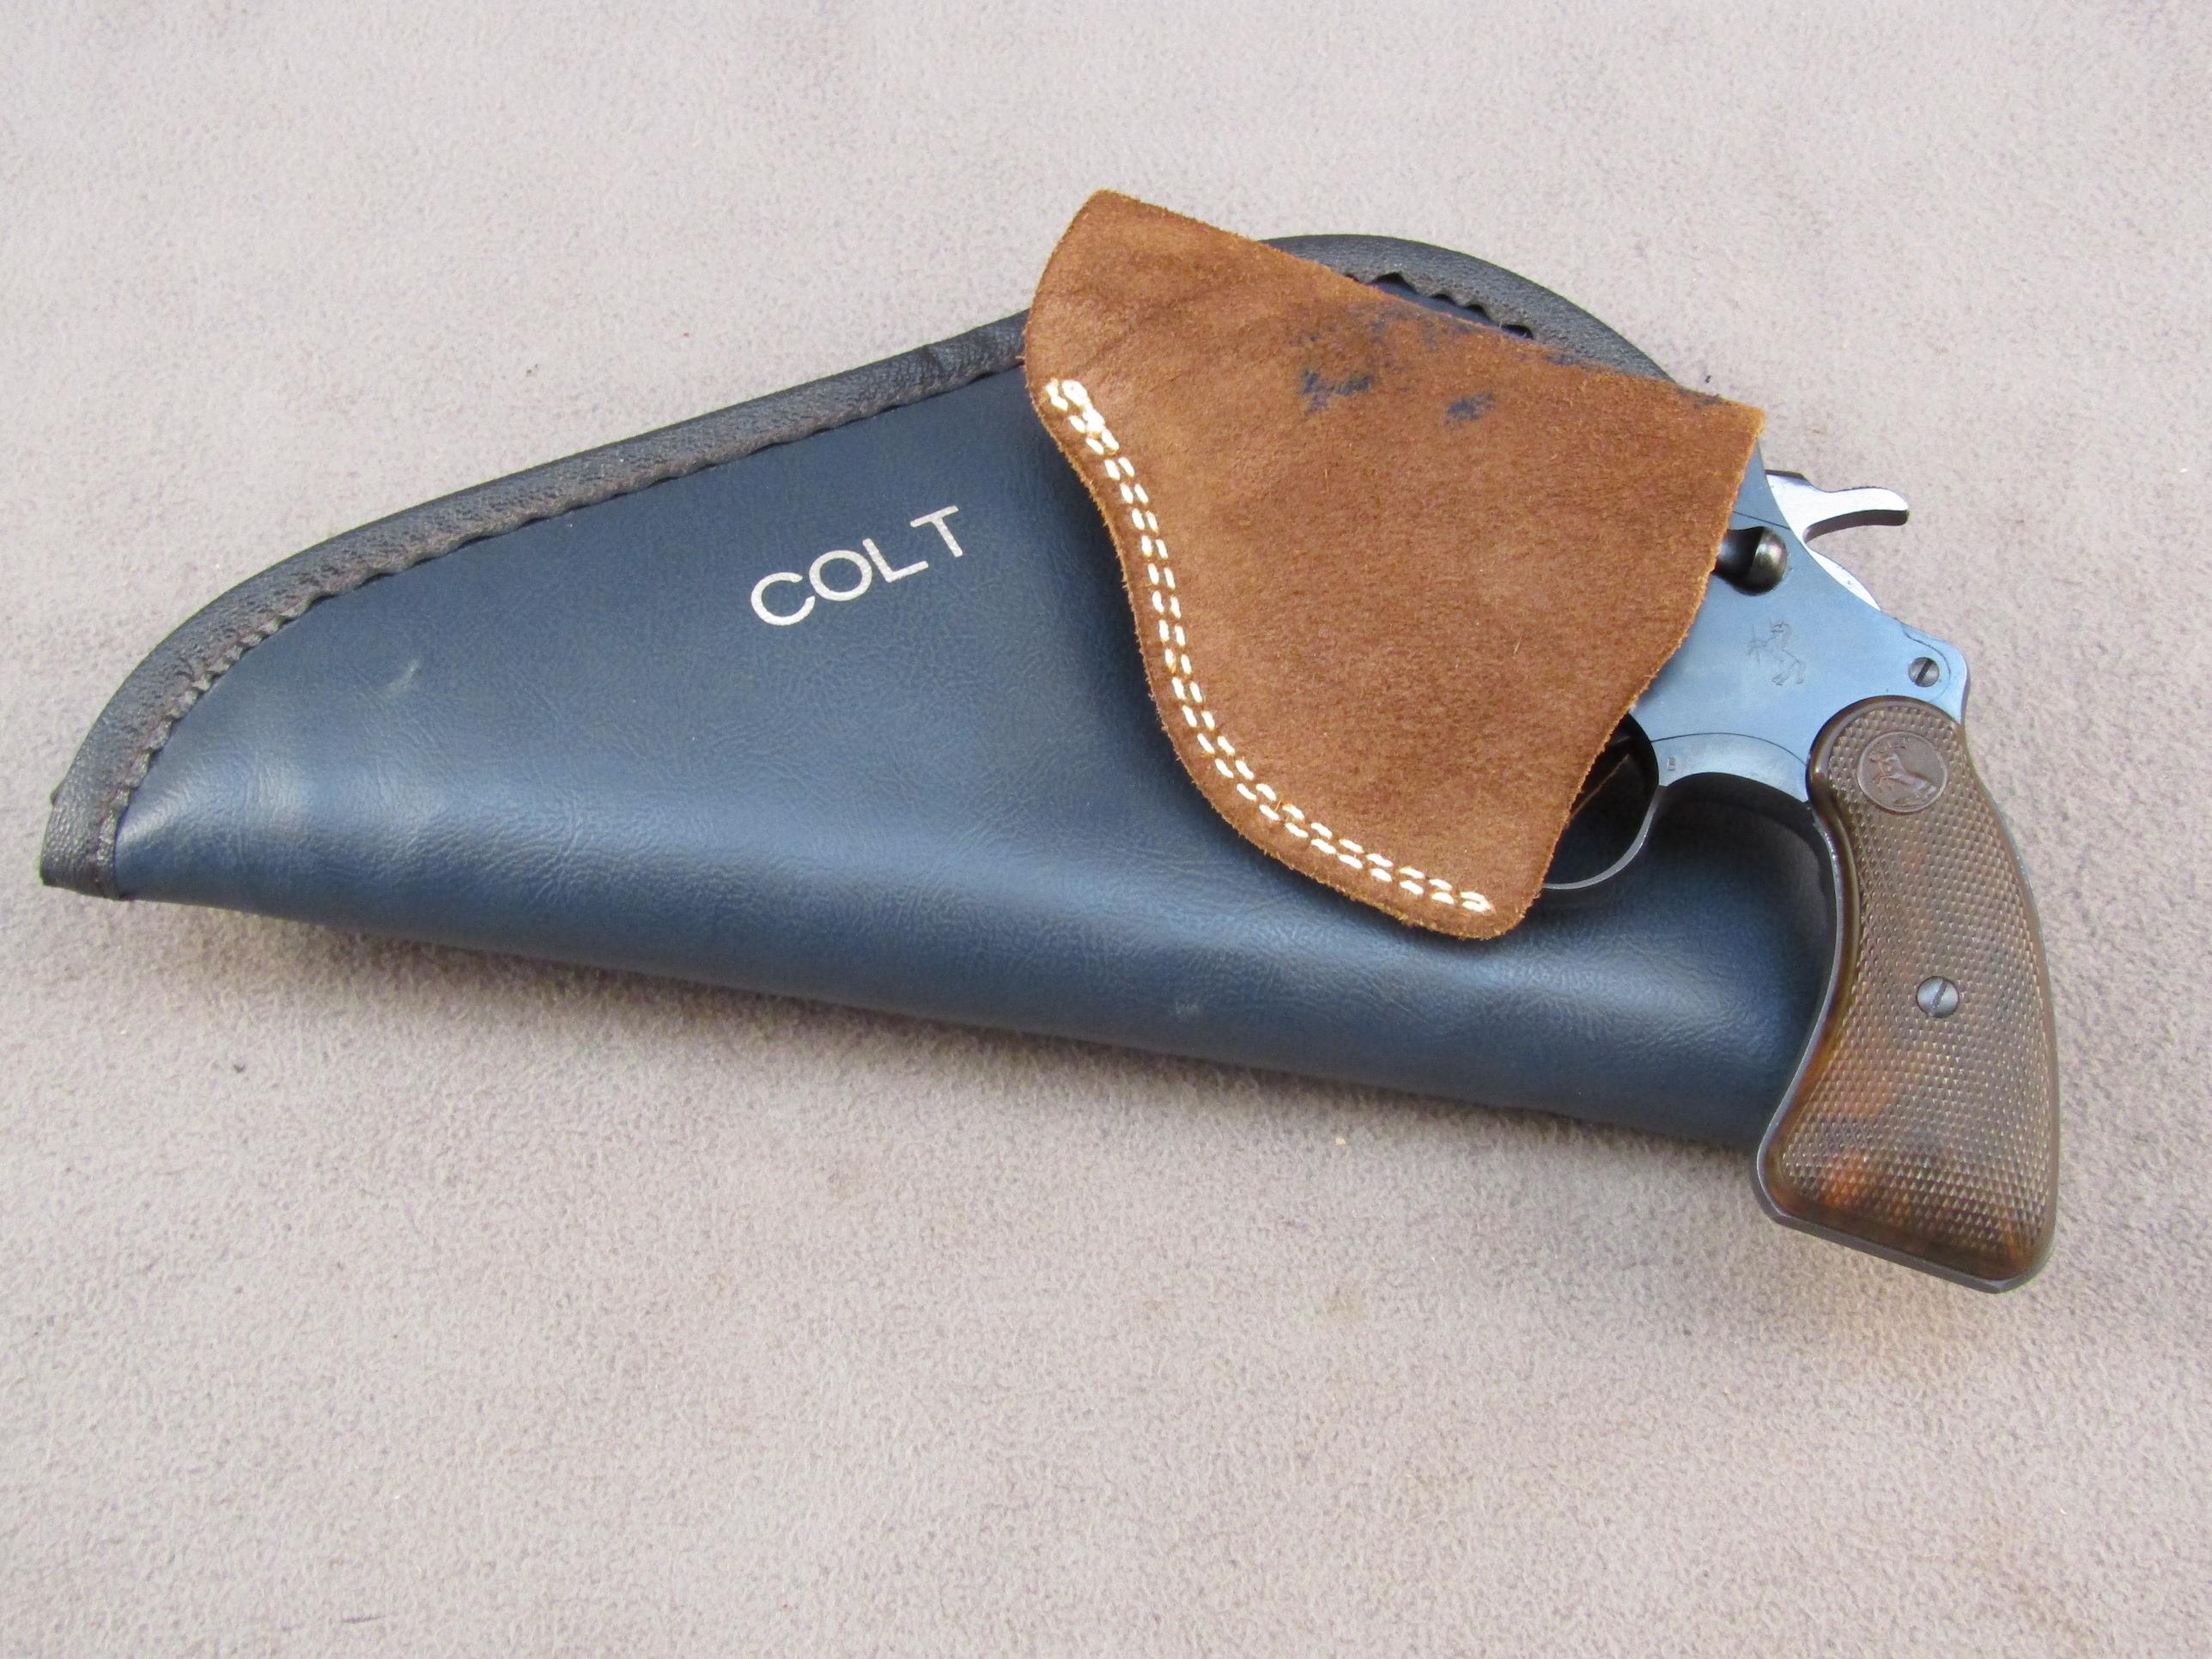 handgun: COLT Model Detective Special, Revolver, .38spl, 6 shot, 2" barrel, S#616810